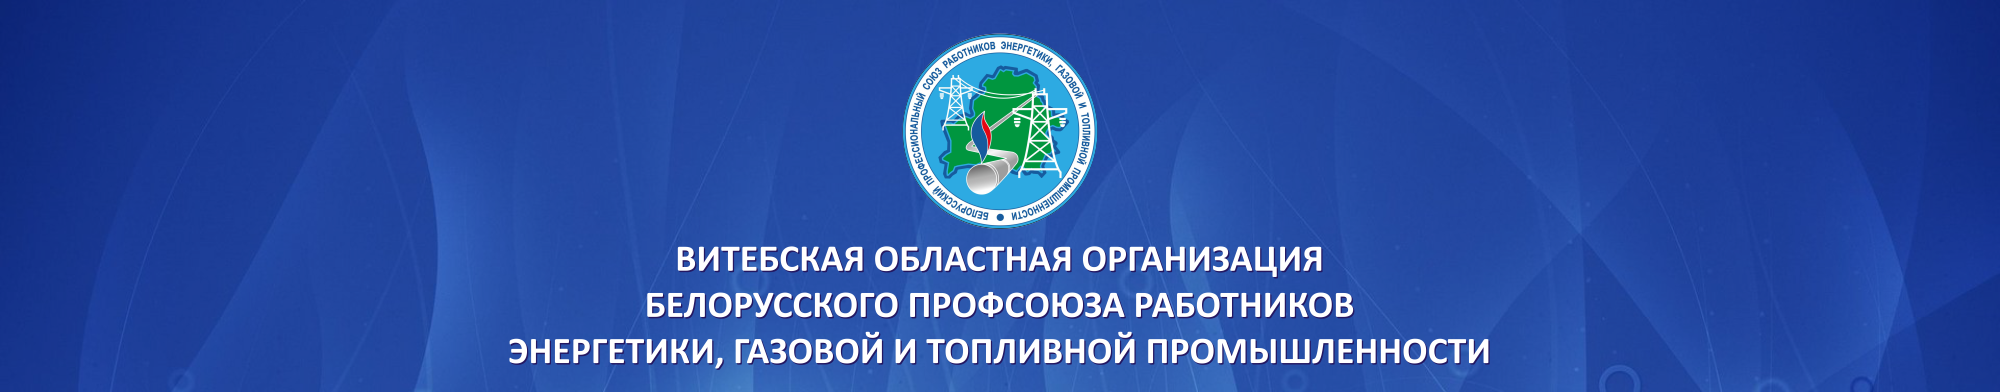 Витебская областная организация Белорусского профсоюза работников энергетики, газовой и топливной промышленности